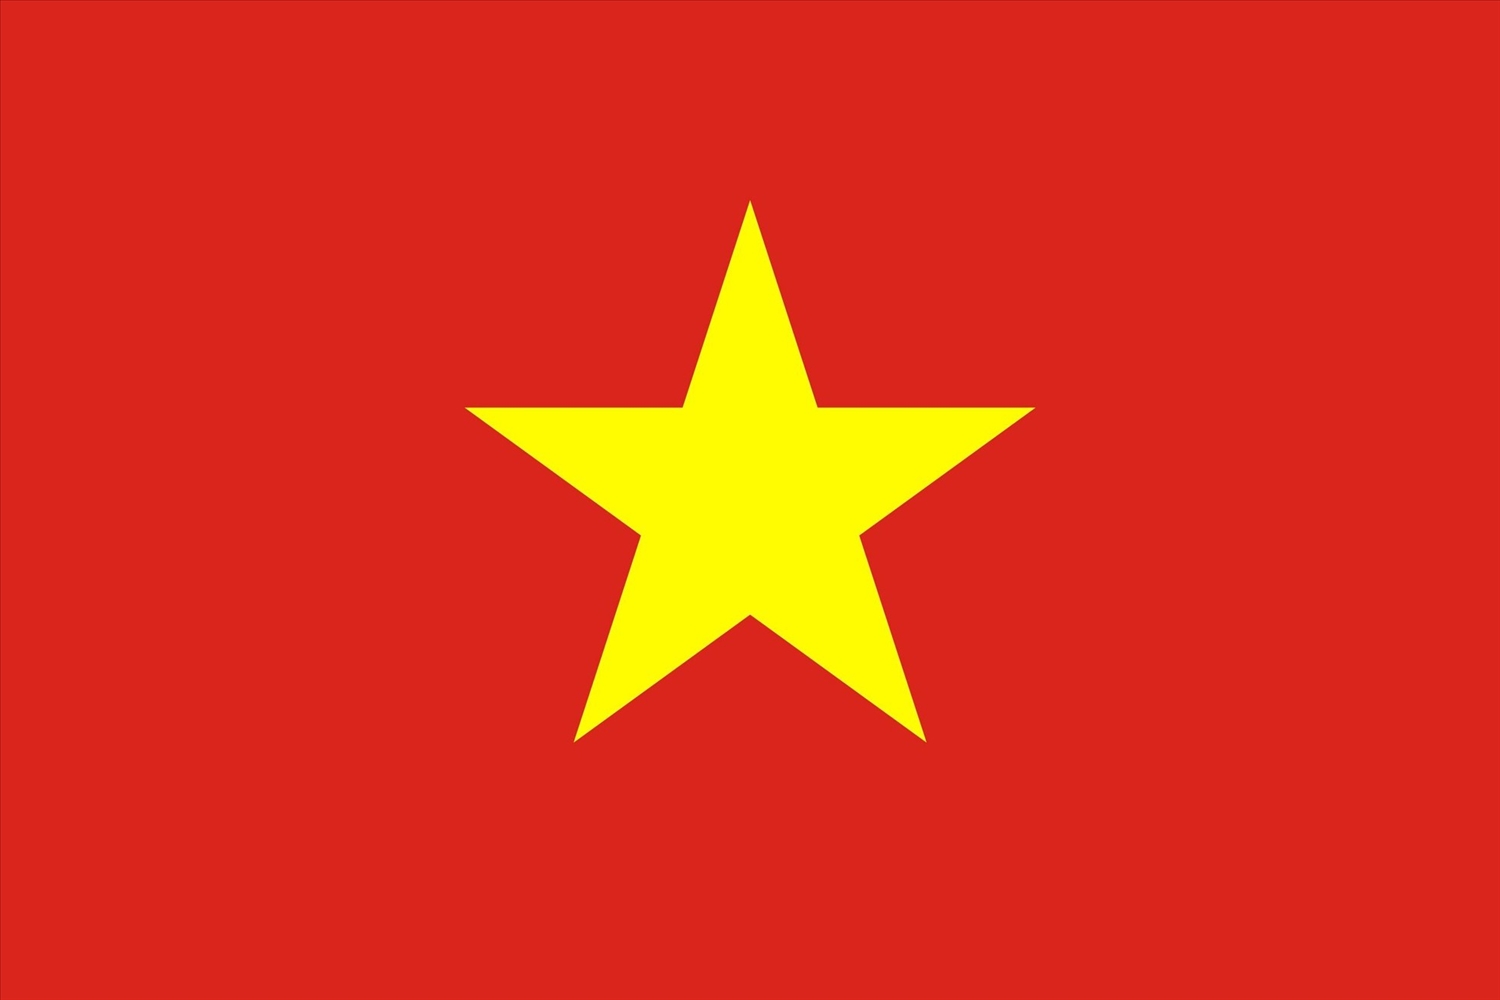 Tinh hoa quốc kỳ Việt Nam 2024: Tinh hoa quốc kỳ Việt Nam trong năm 2024 được thể hiện qua những hình ảnh đẹp và tinh tế. Đây là sự kết hợp giữa những nét truyền thống và sự đổi mới, để thể hiện sự đoàn kết và tương trợ của người dân Việt Nam. Cùng trải nghiệm hình ảnh tinh hoa quốc kỳ Việt Nam 2024, nhằm khơi dậy sự tự hào và tình yêu nước của mỗi người.